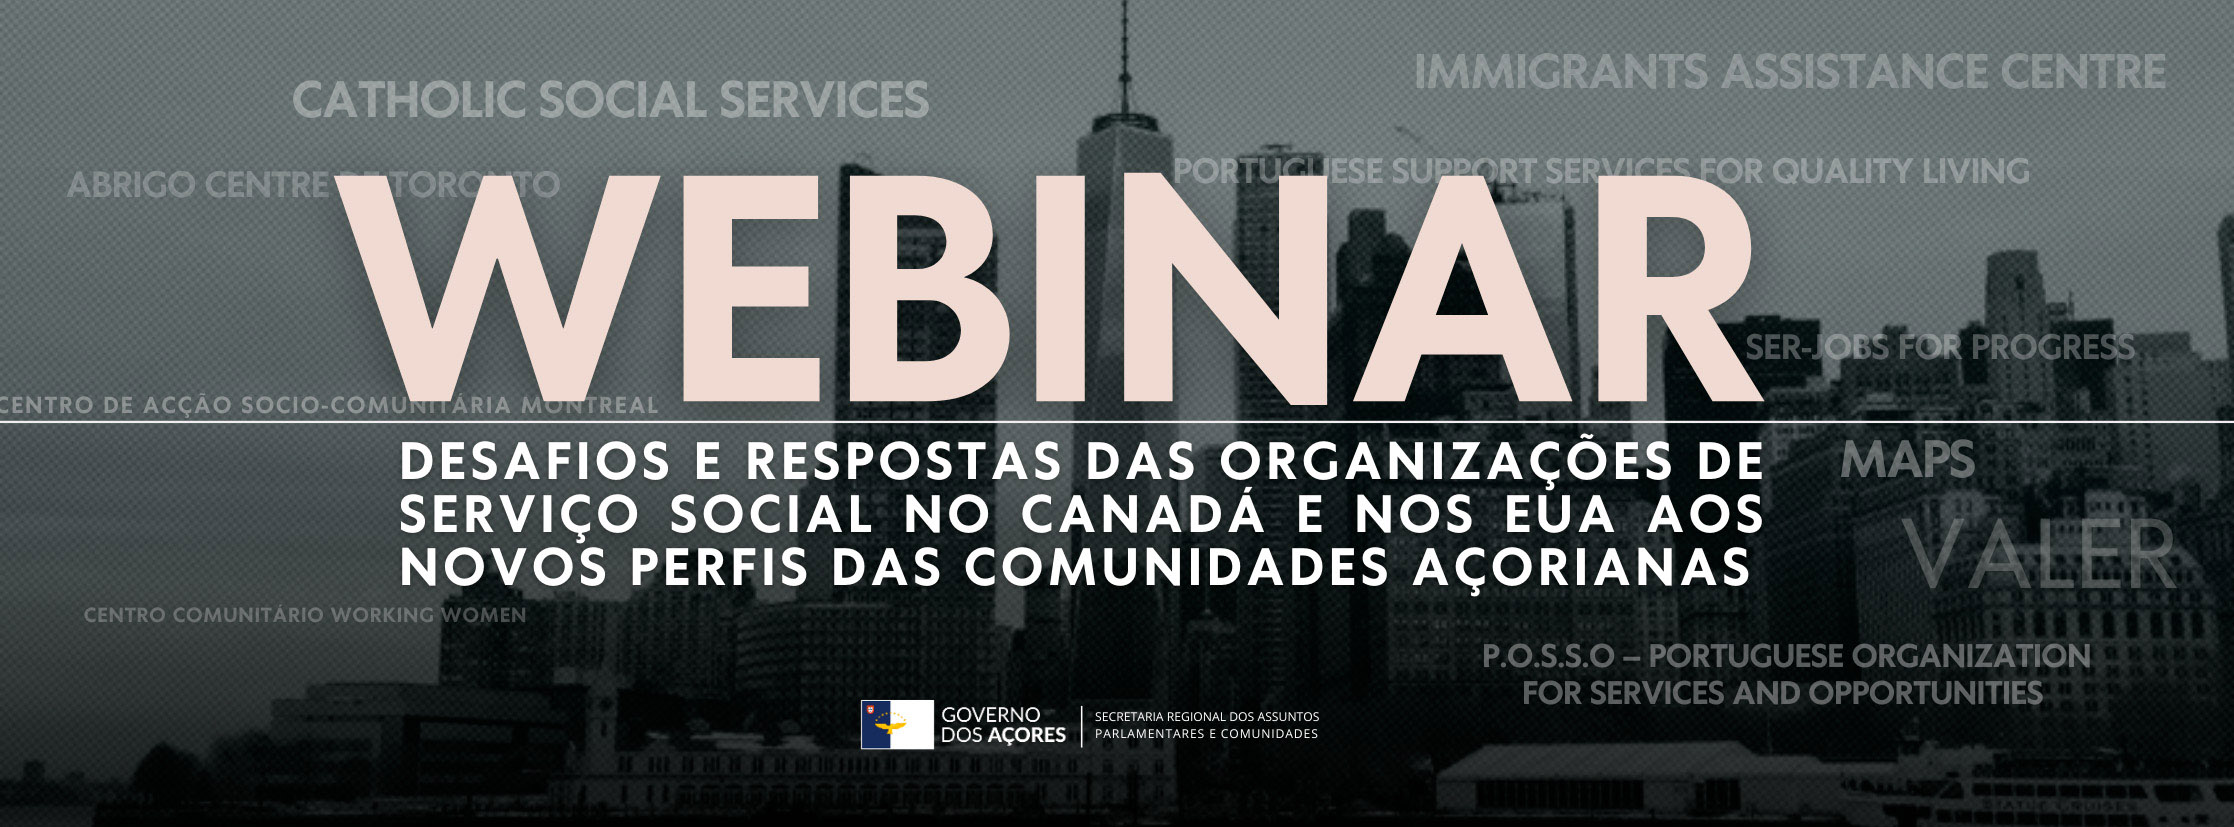 ‘Webinar’ debate desafios das organizações de serviço social das comunidades açorianas da América do Norte